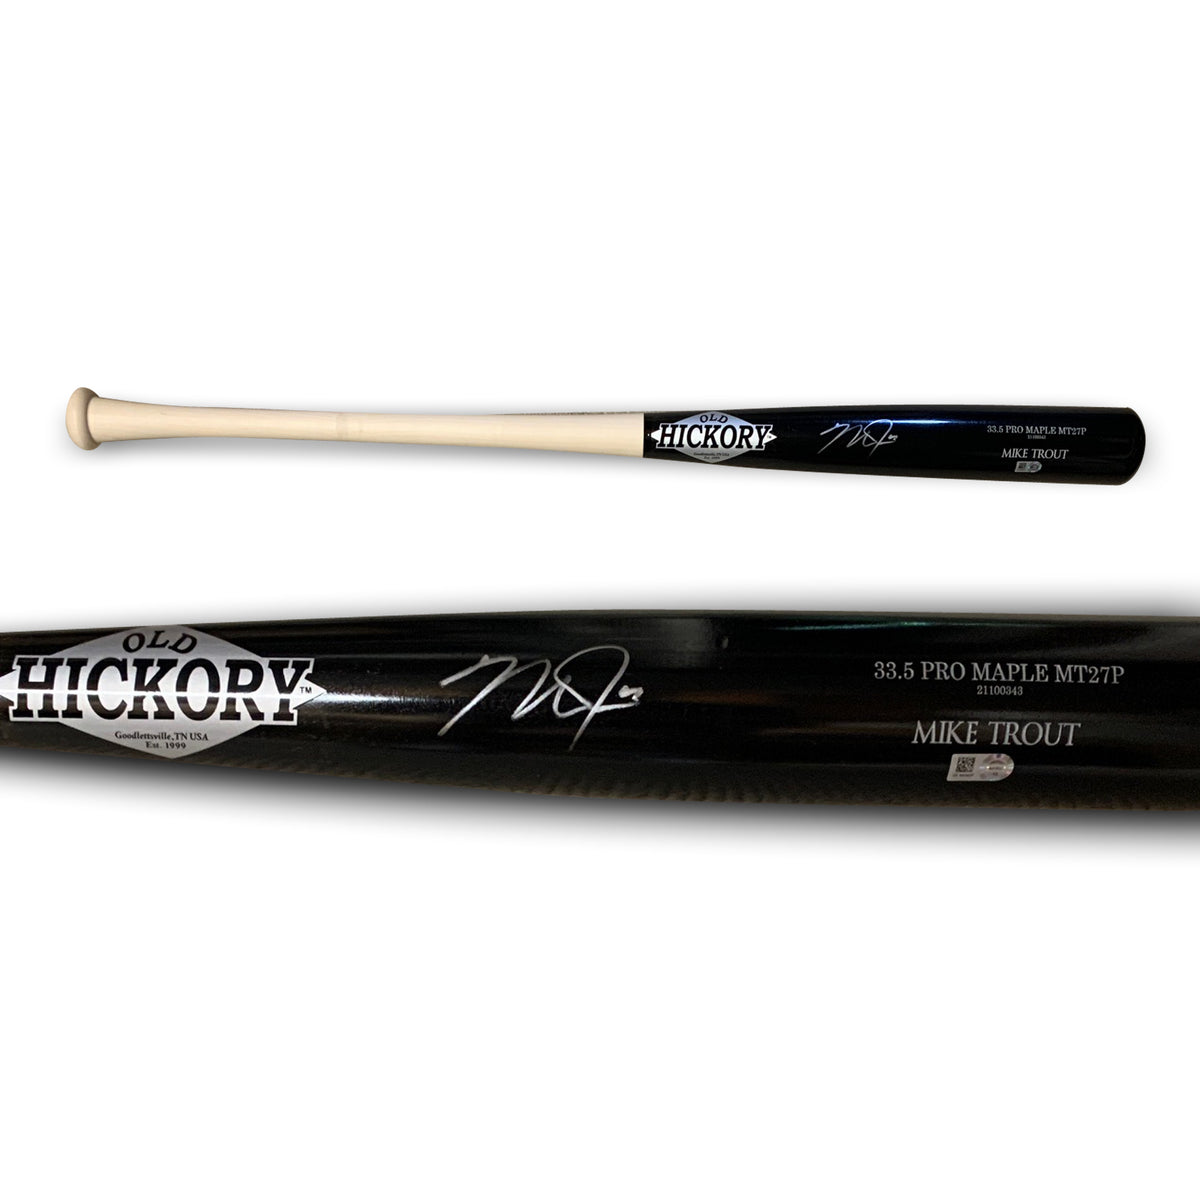 Autographed Bats, MLB Memorabilia